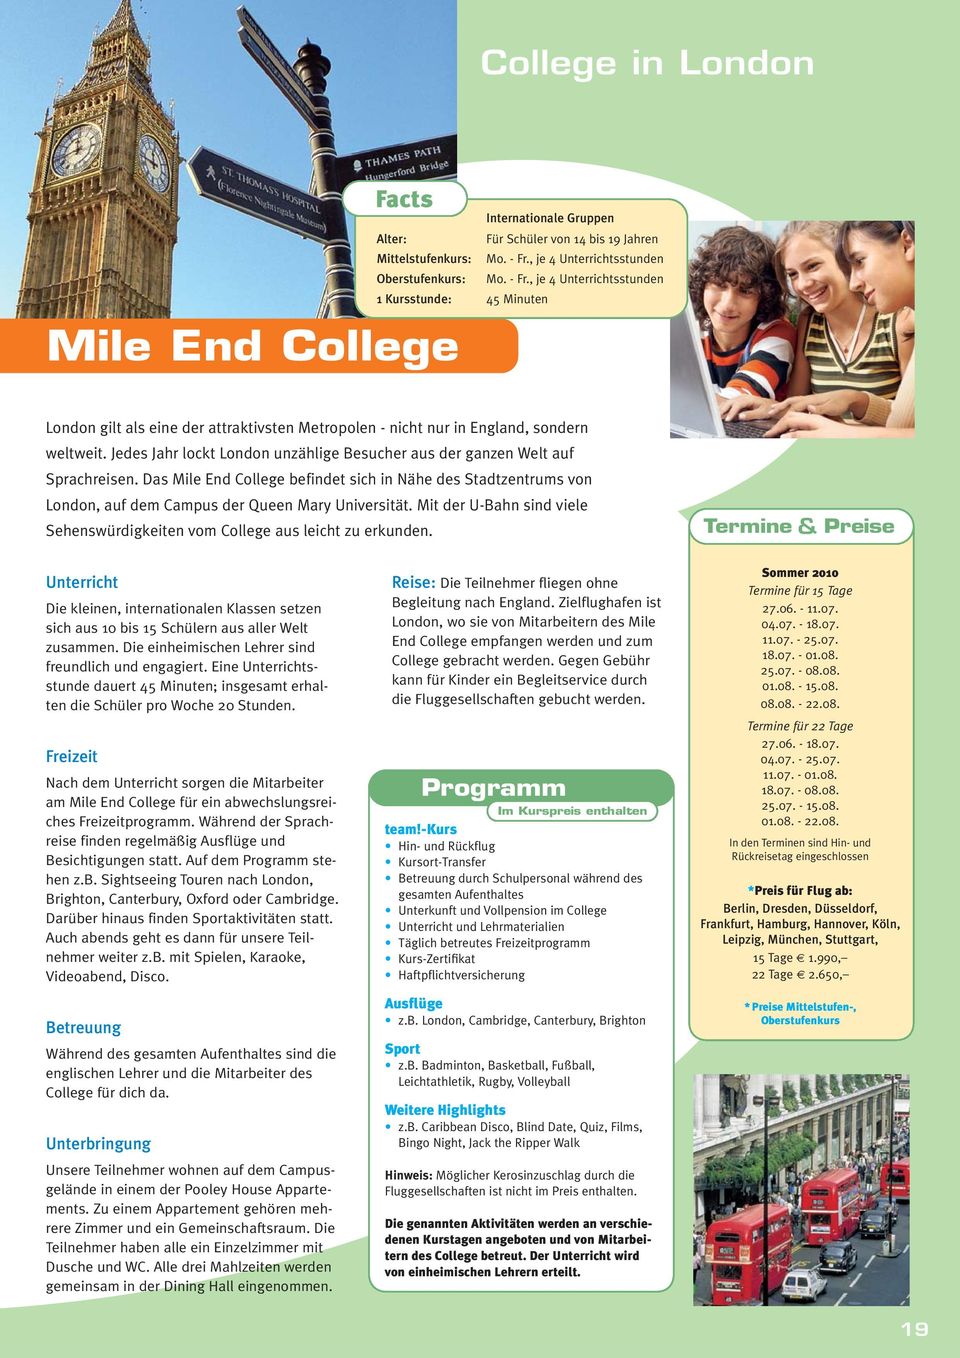 Jedes Jahr lockt London unzählige Besucher aus der ganzen Welt auf Sprachreisen. Das Mile End College befindet sich in Nähe des Stadtzentrums von London, auf dem Campus der Queen Mary Universität.